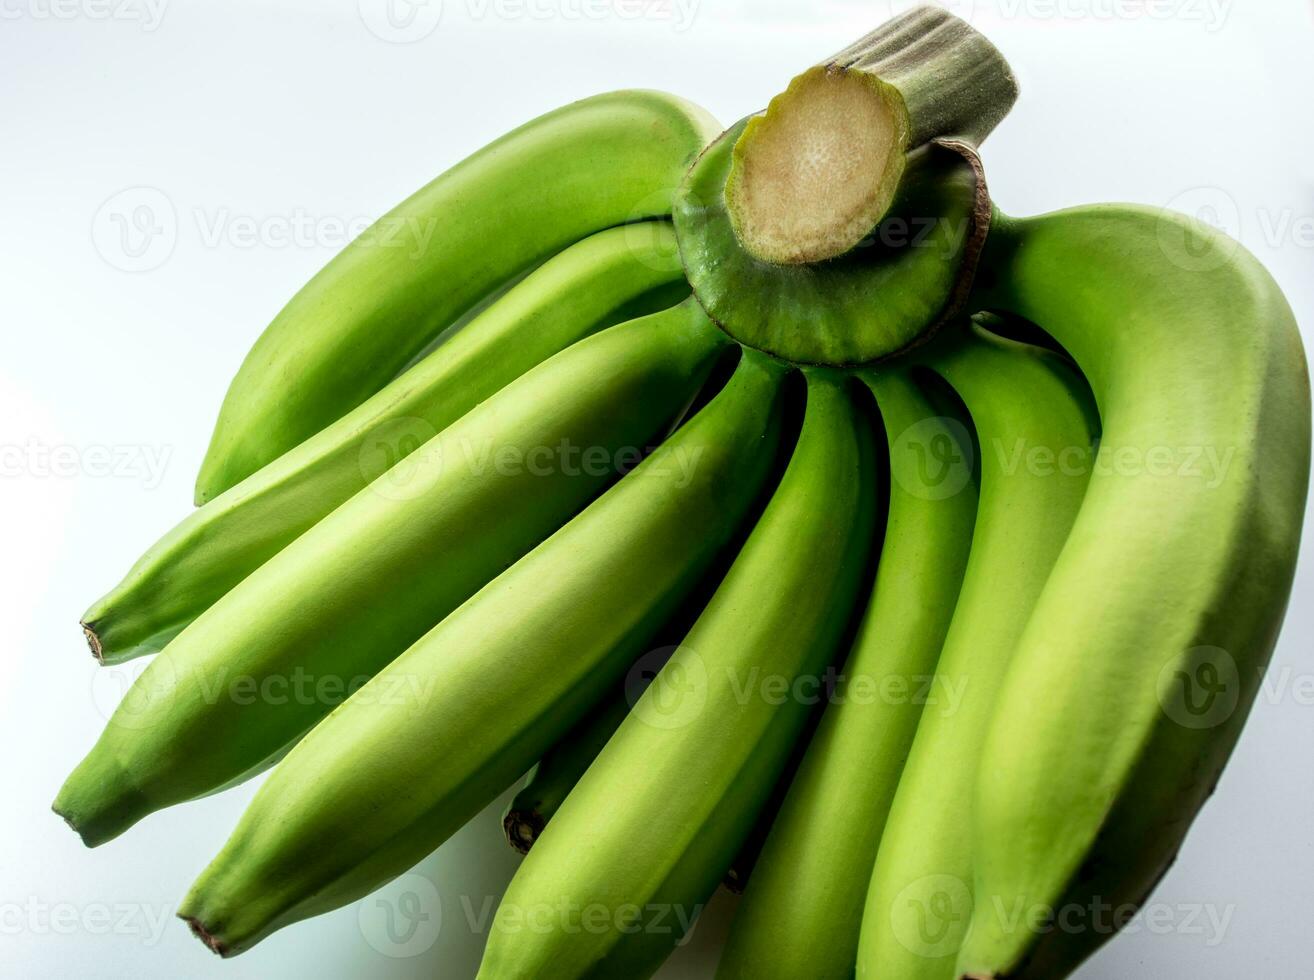 banana cavendish cruda isolata su sfondo bianco foto